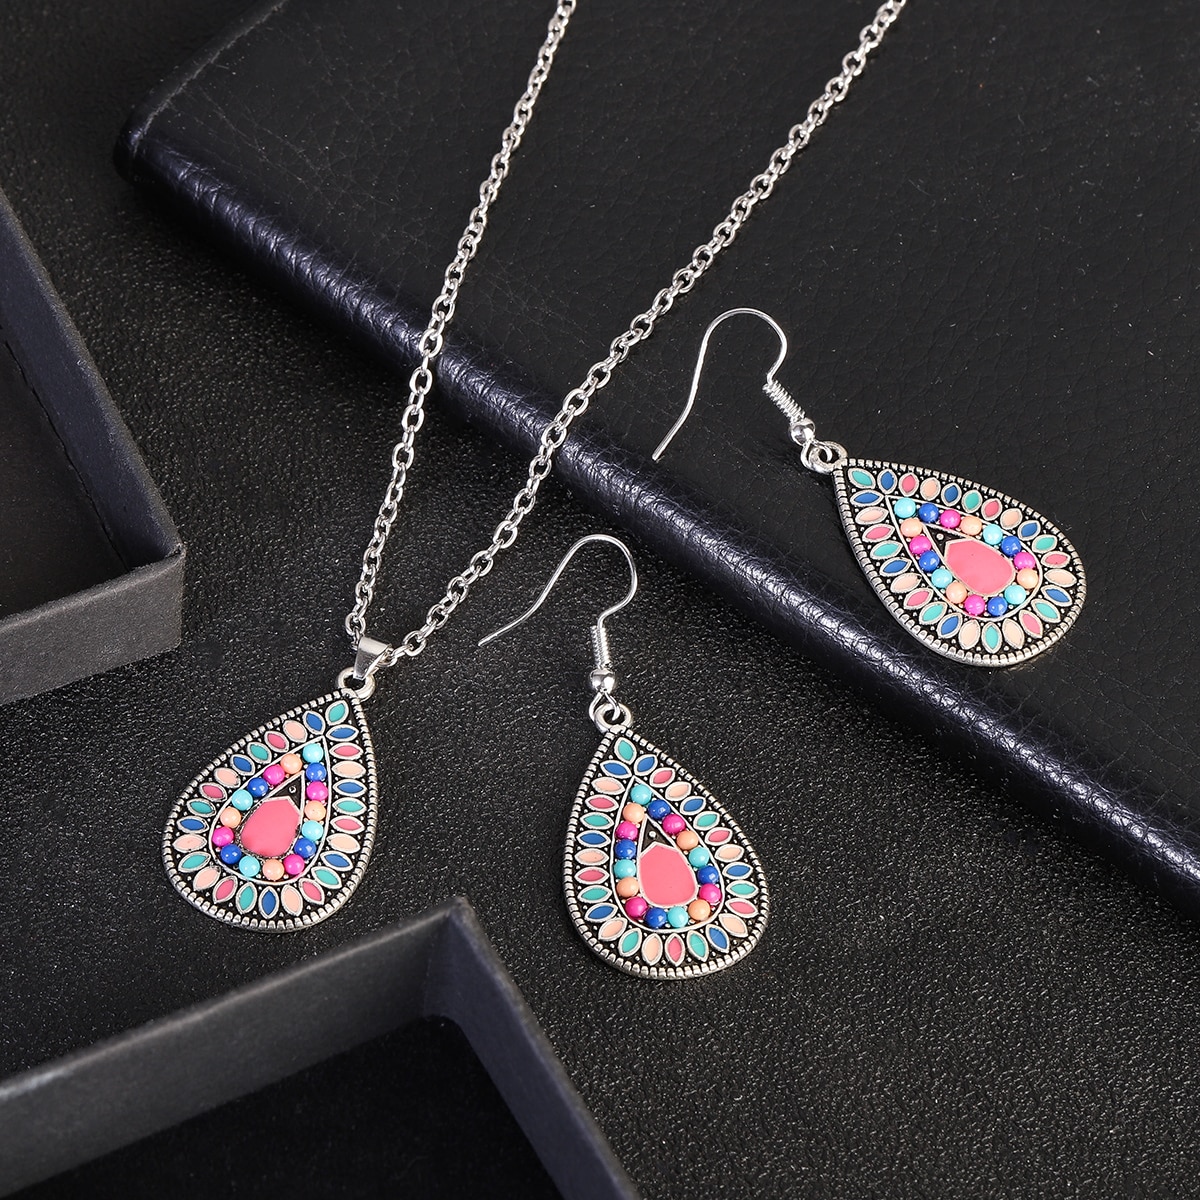 New-Ethnic-Boho-Flower-Earrings-Jewelry-Set-Bijoux-Women39s-Corful-Dripping-Oil-Earrings-Necklace-Se-1005004549738816-5